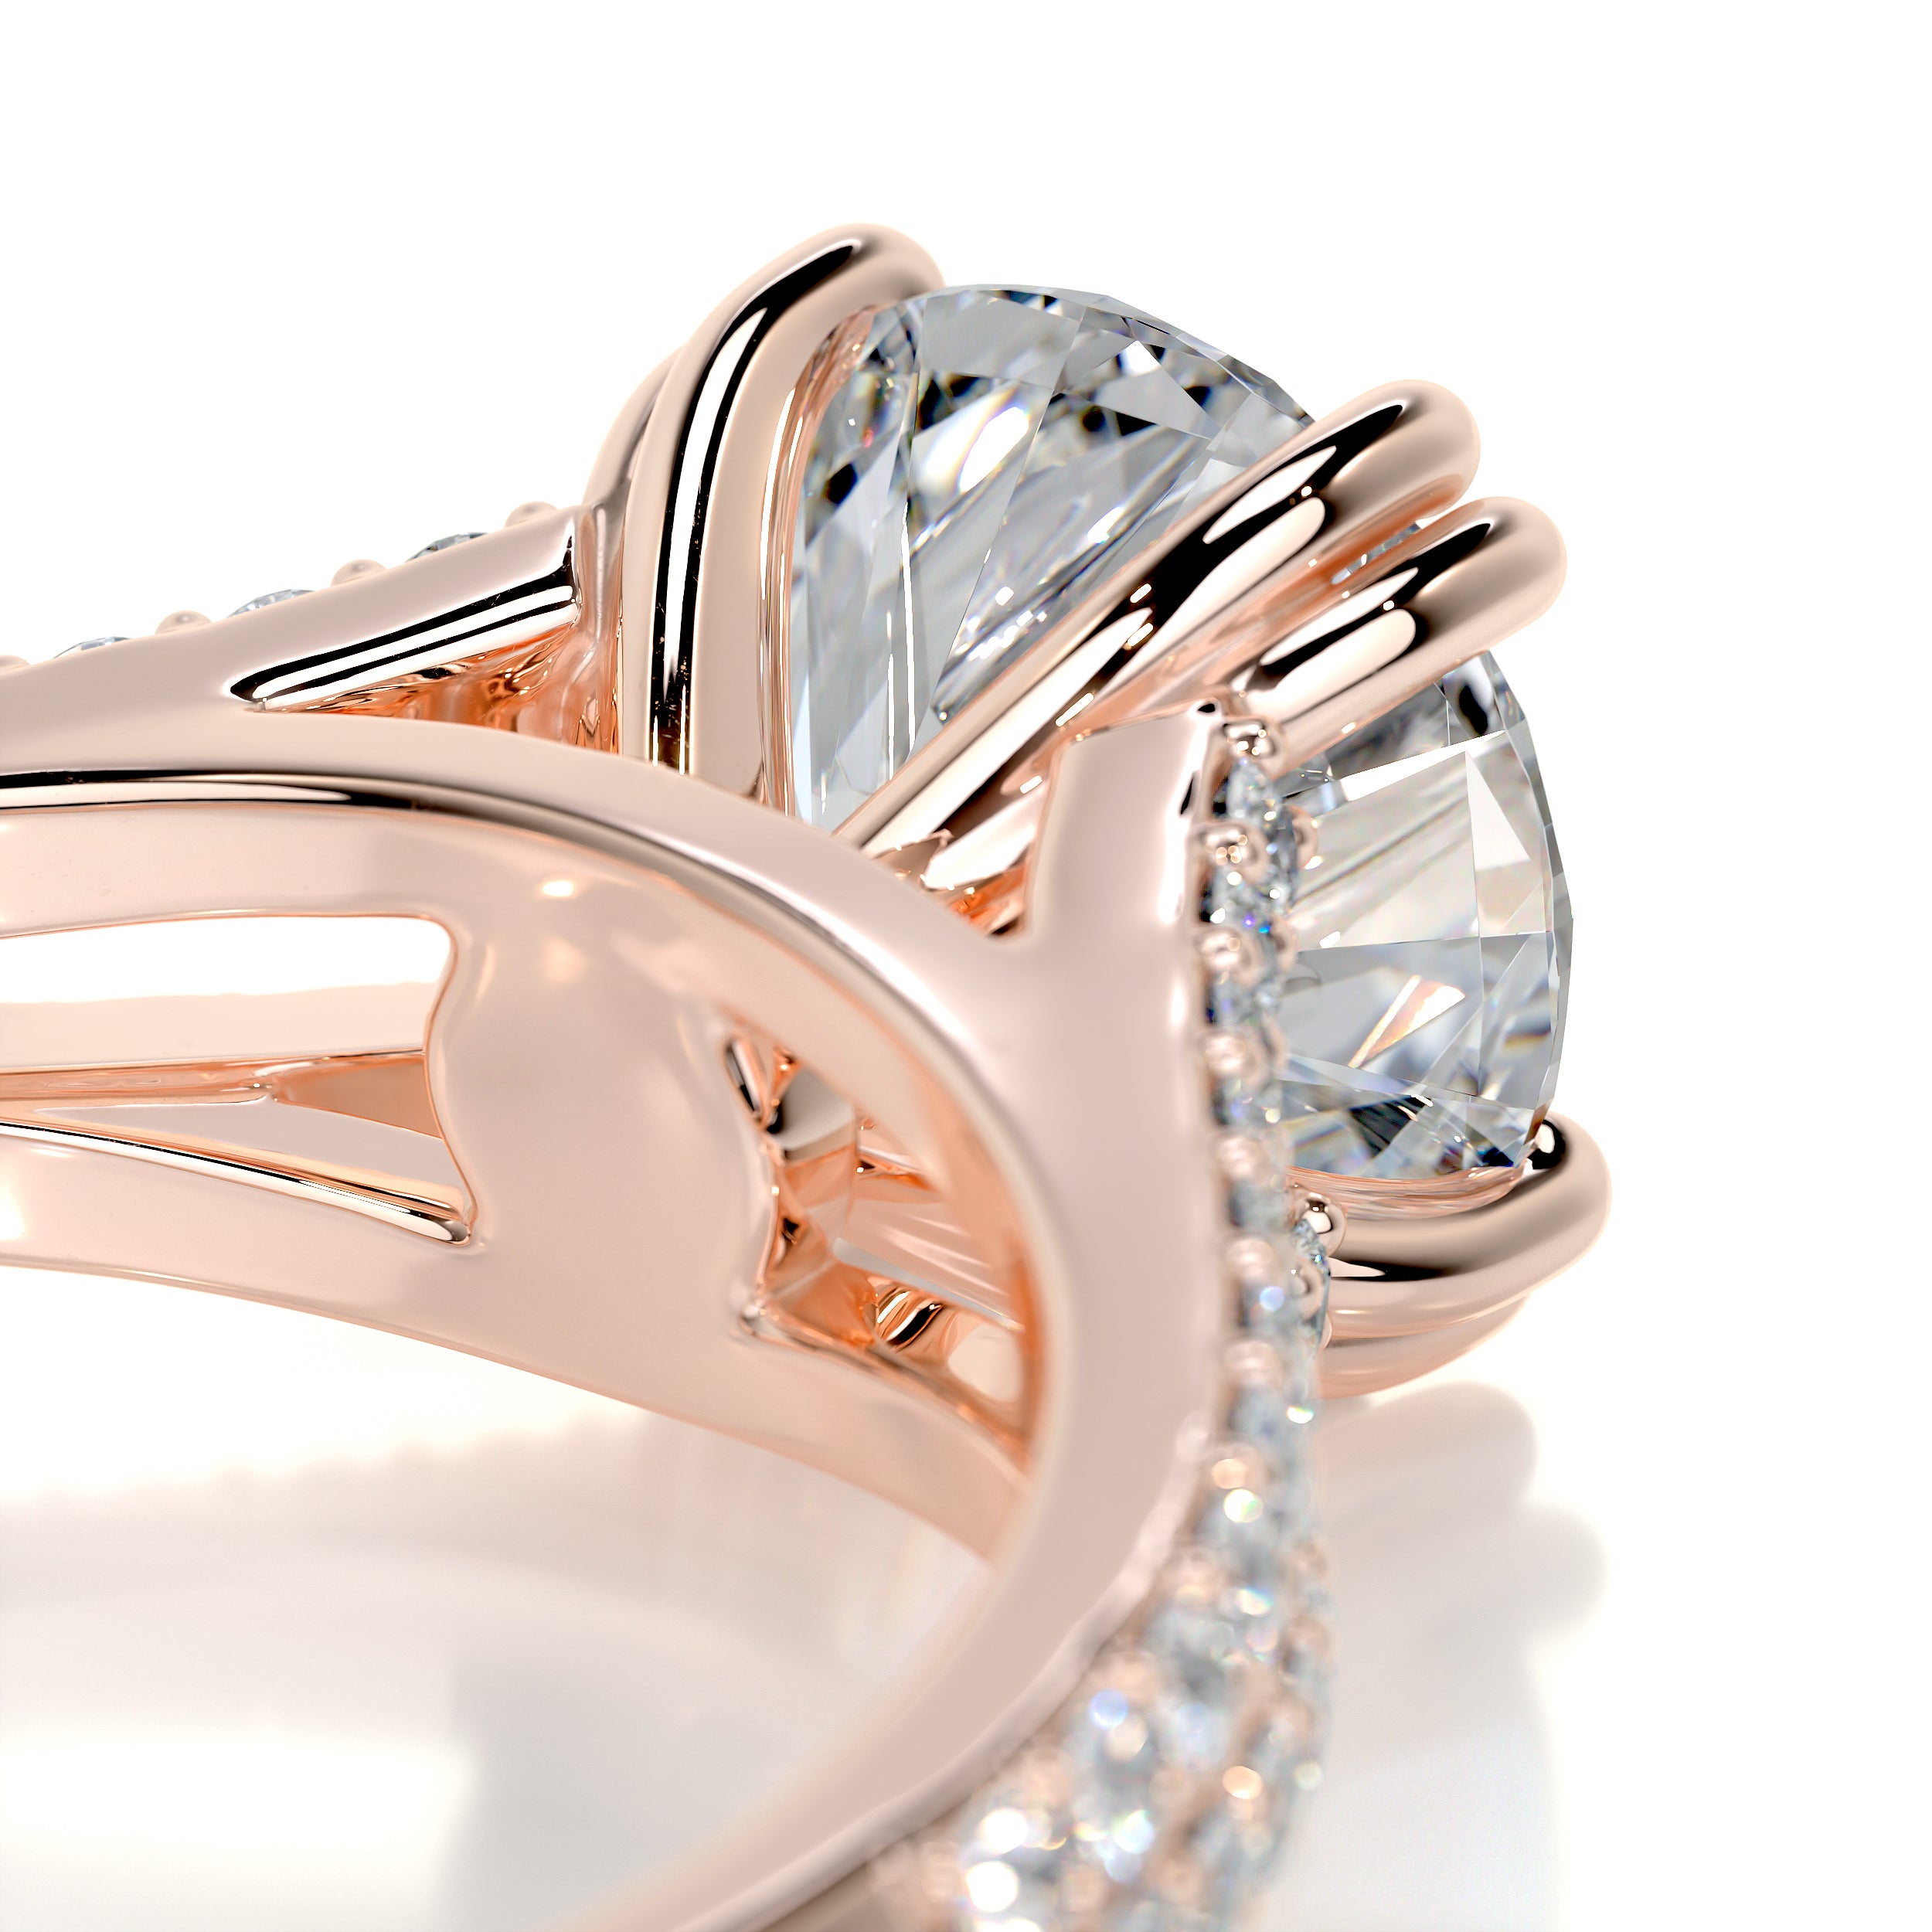 Evelyn Diamond Engagement Ring -14K Rose Gold